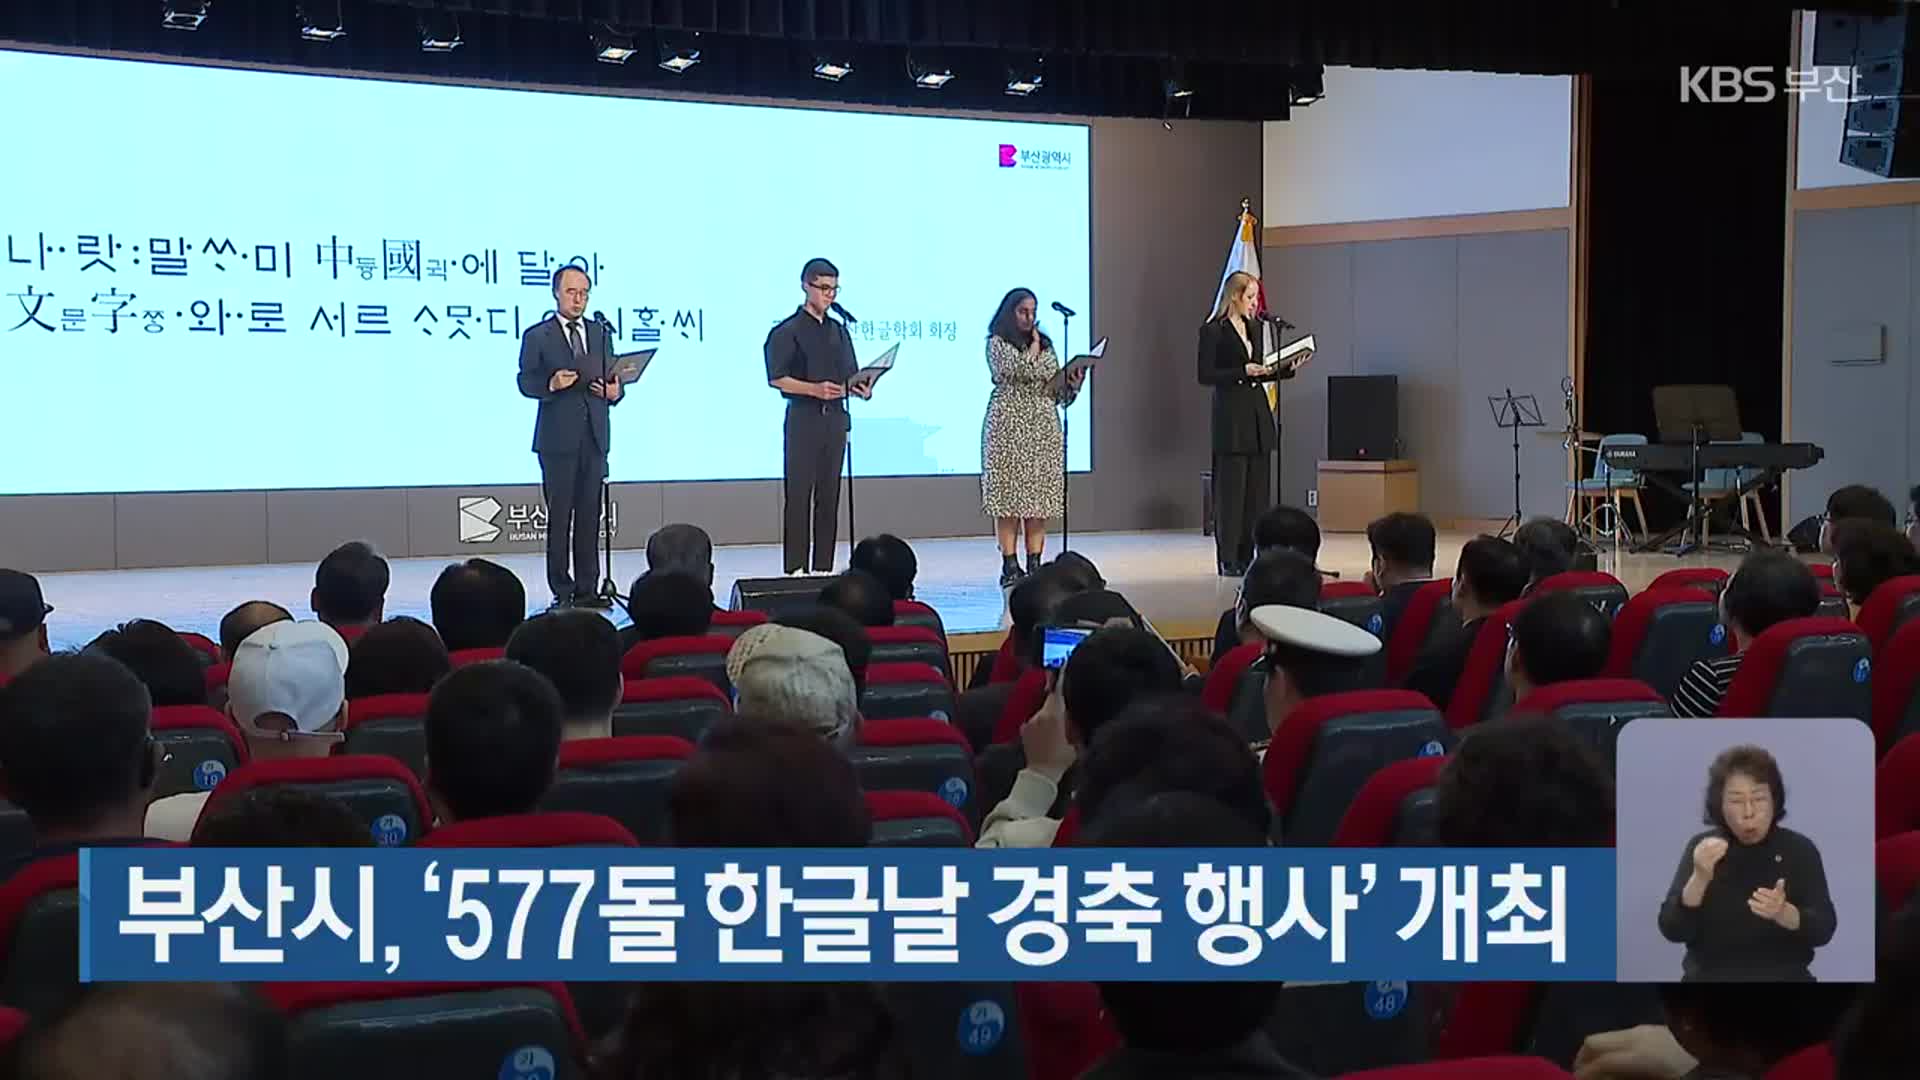 부산시, ‘577돌 한글날 경축 행사’ 개최